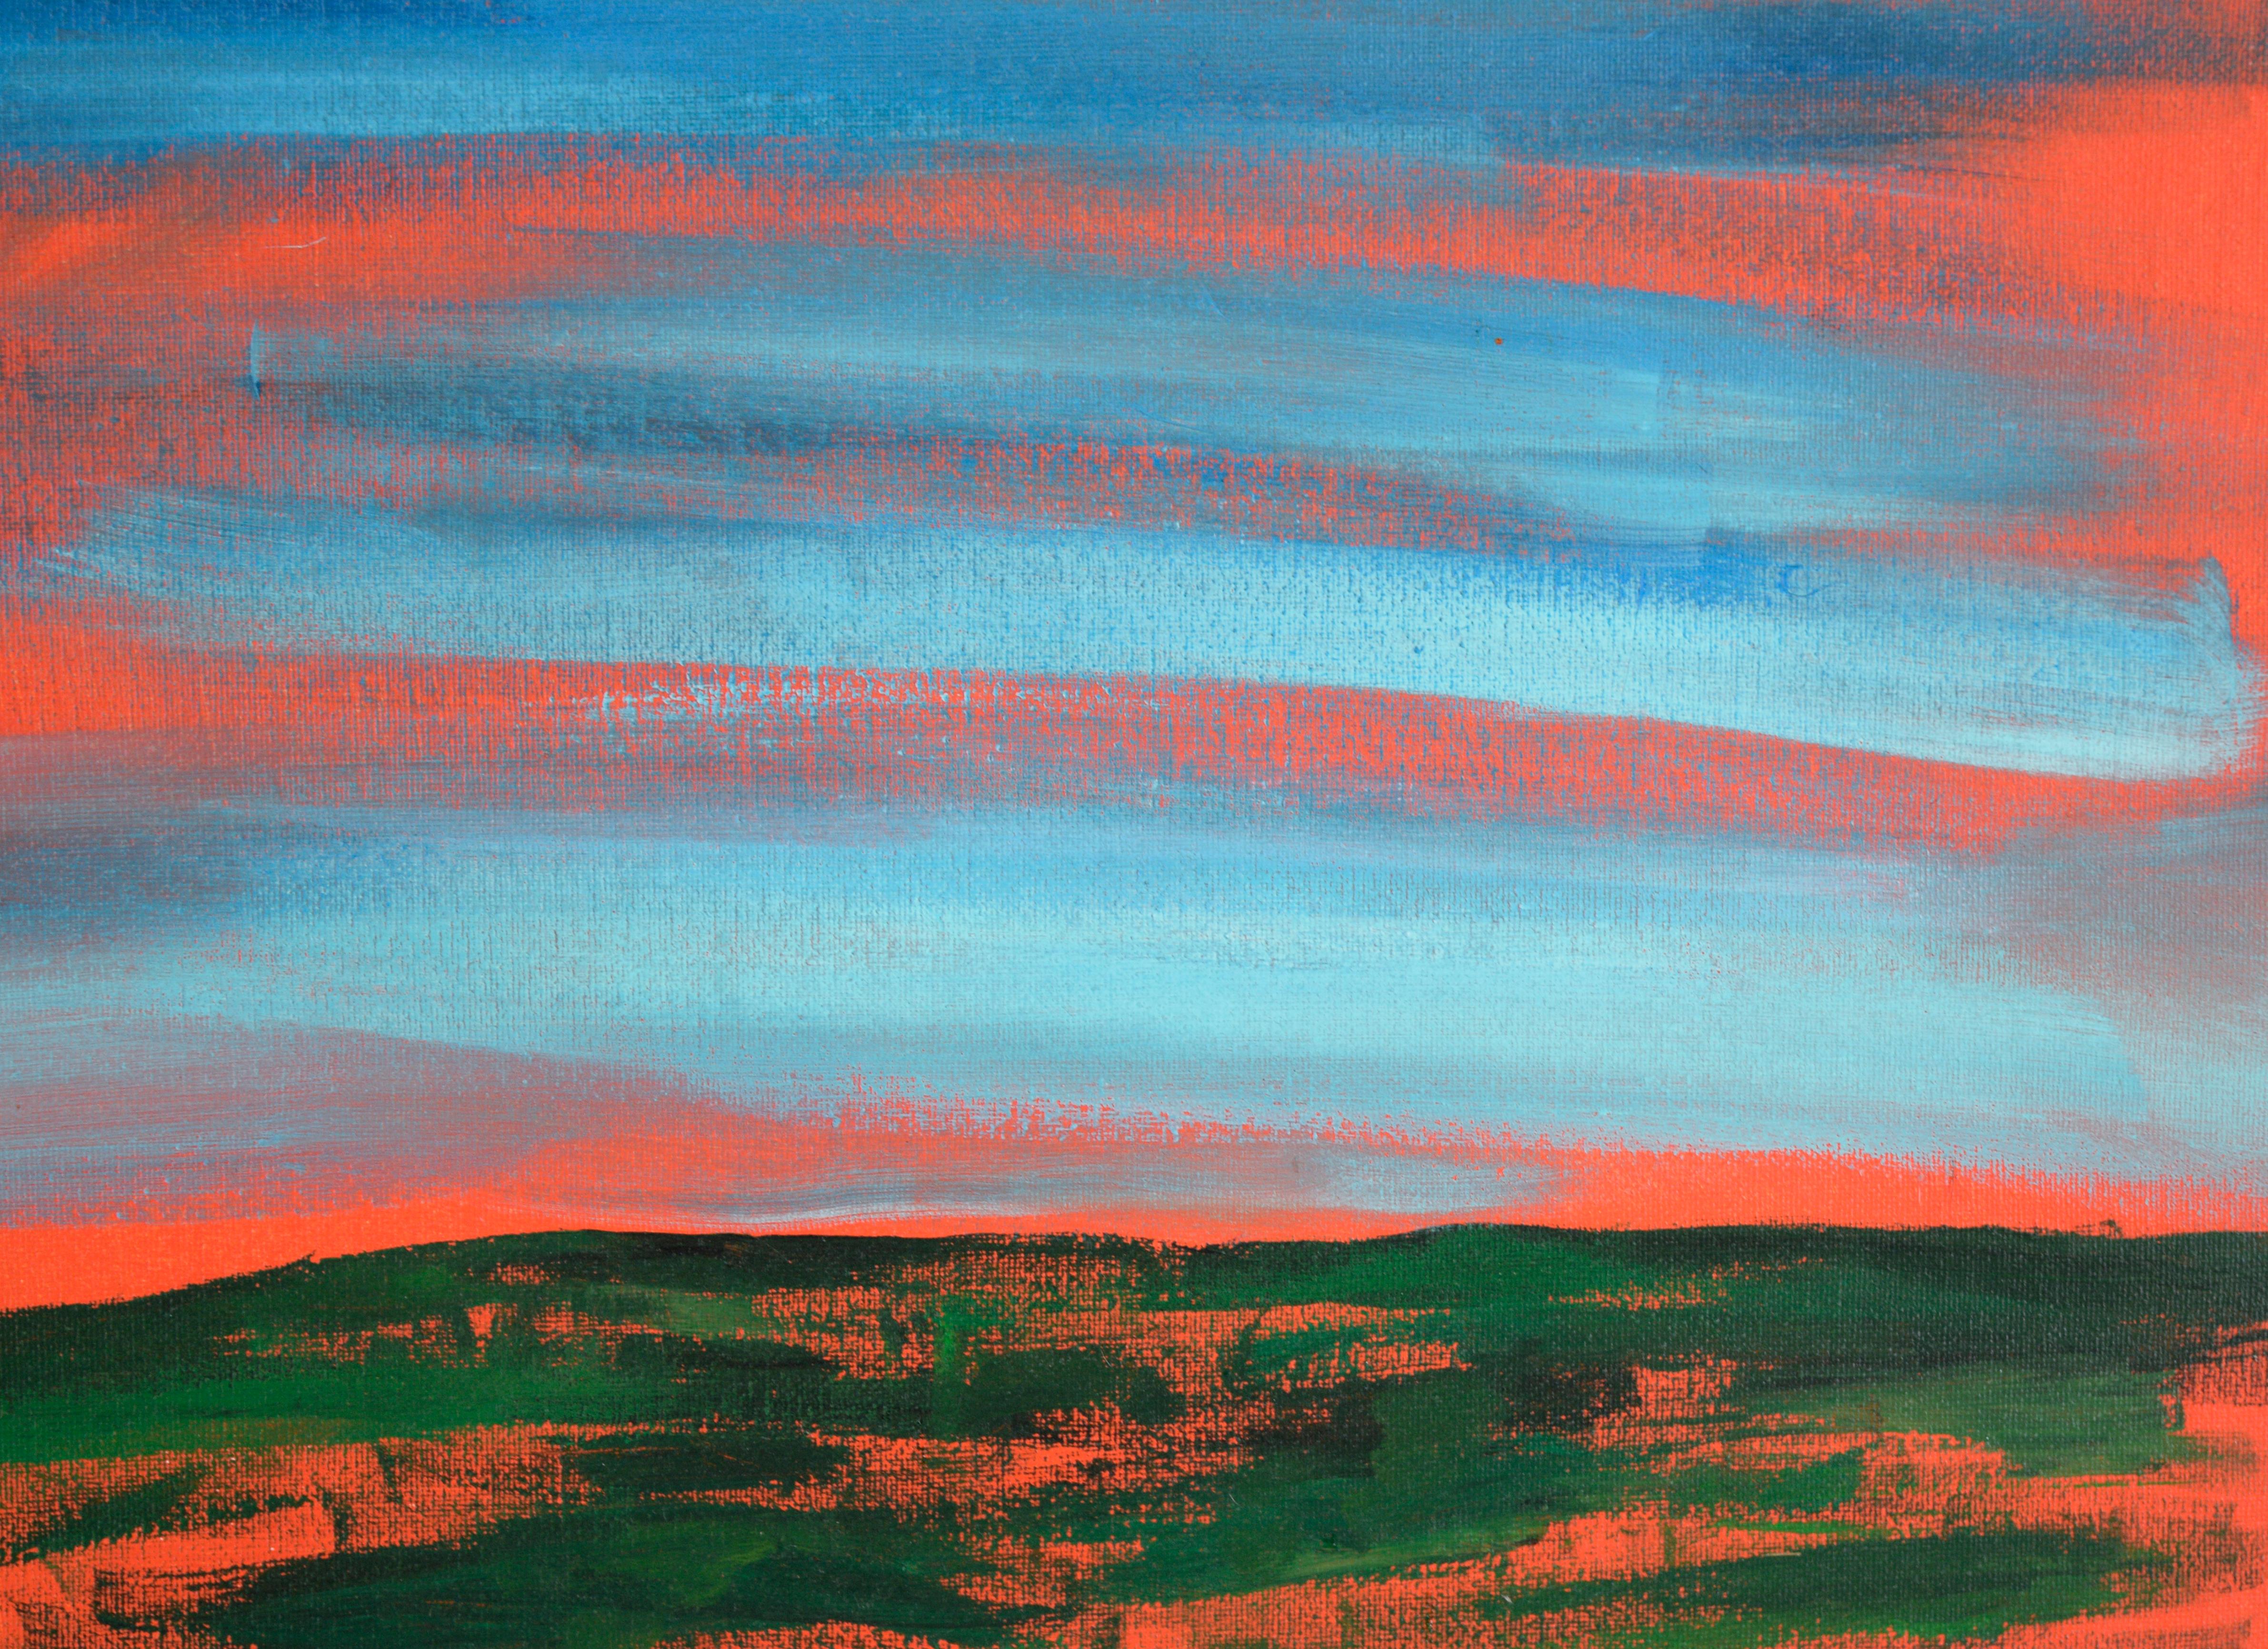 Abstrahierte Landschaft des kalifornischen Künstlers Devon Brockopp-Hammer (Amerikaner, geb. 1986). Die kräftige orangefarbene Untermalung lässt die Komposition durchscheinen und verleiht dem Werk einen leuchtenden Effekt. Der Satz 